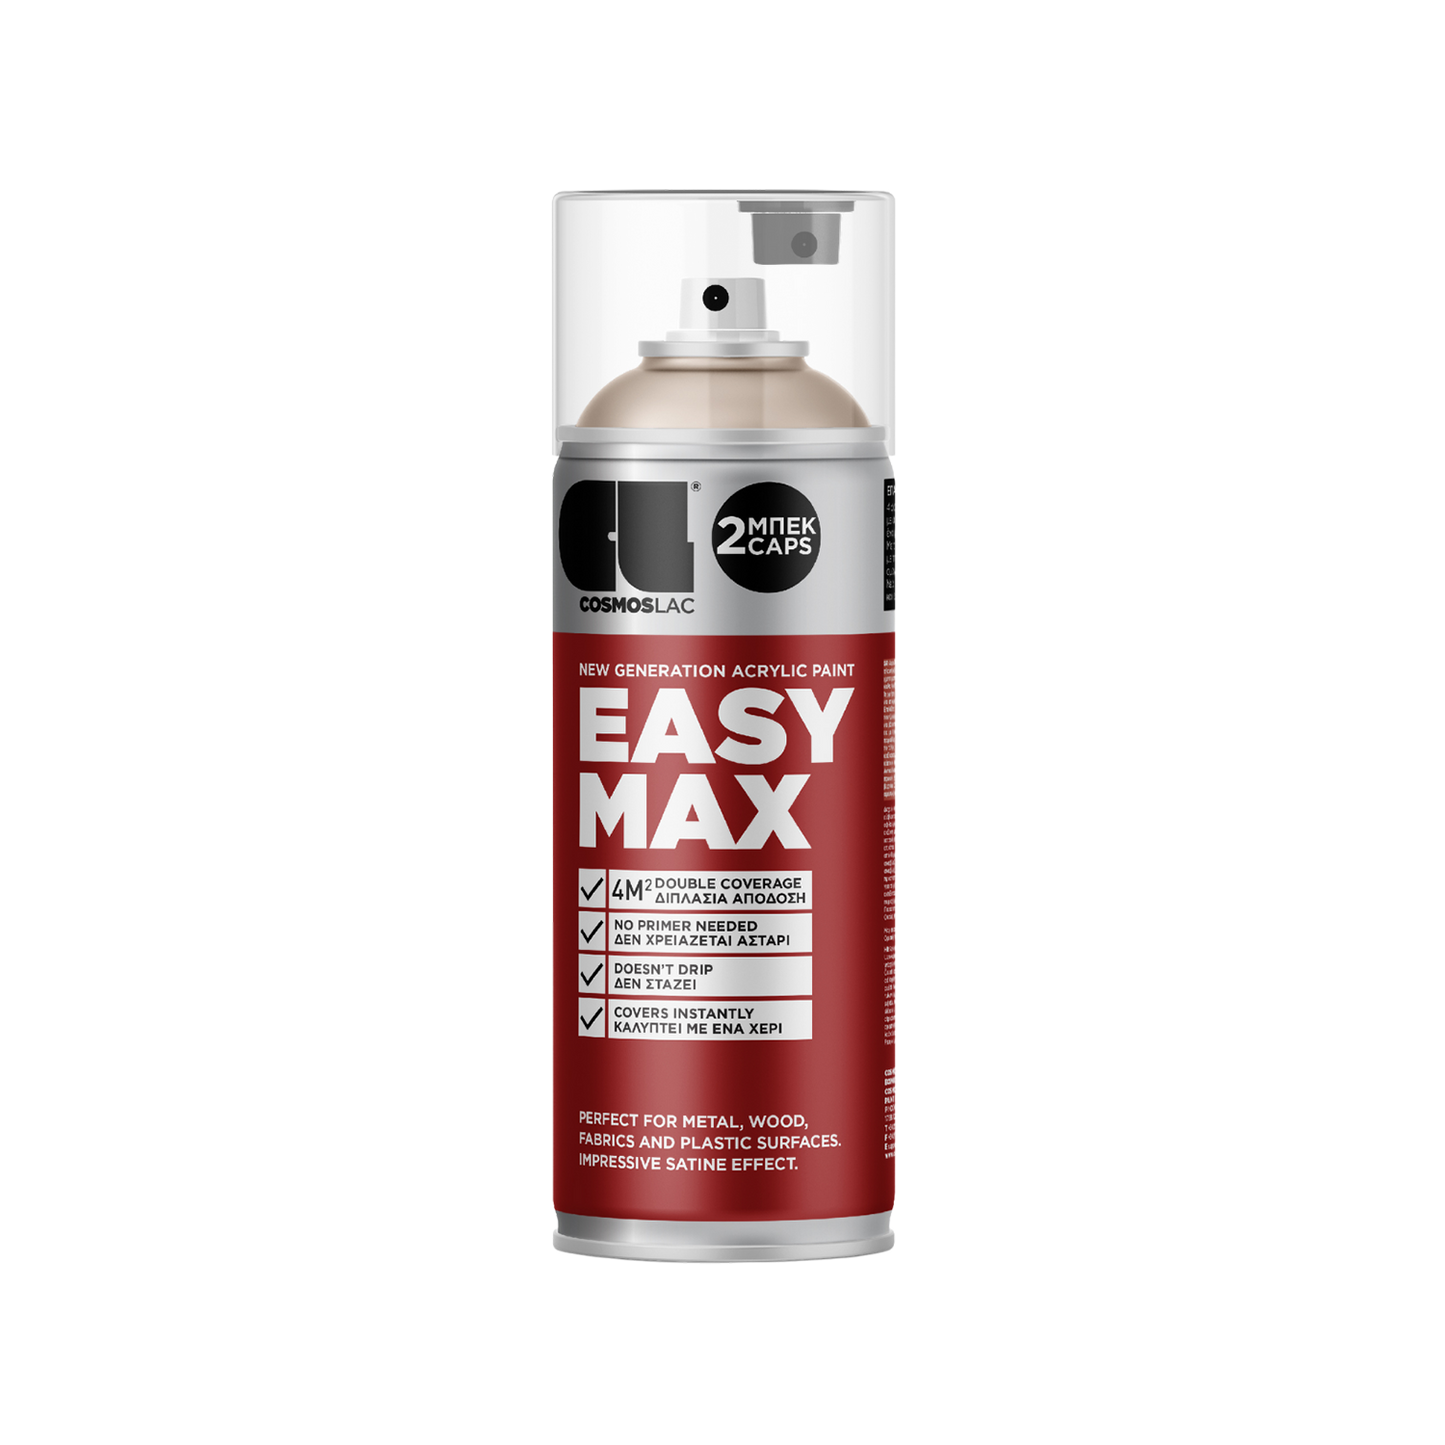 COSMOS LAC EASY MAX Premium Acryllack Sprühlack zum Upcycling und DIY Projekten von Möbeln und Dekoobjekten rot silberne Sprühflasche Inhalt ist pastell-beige Acrylfarbe